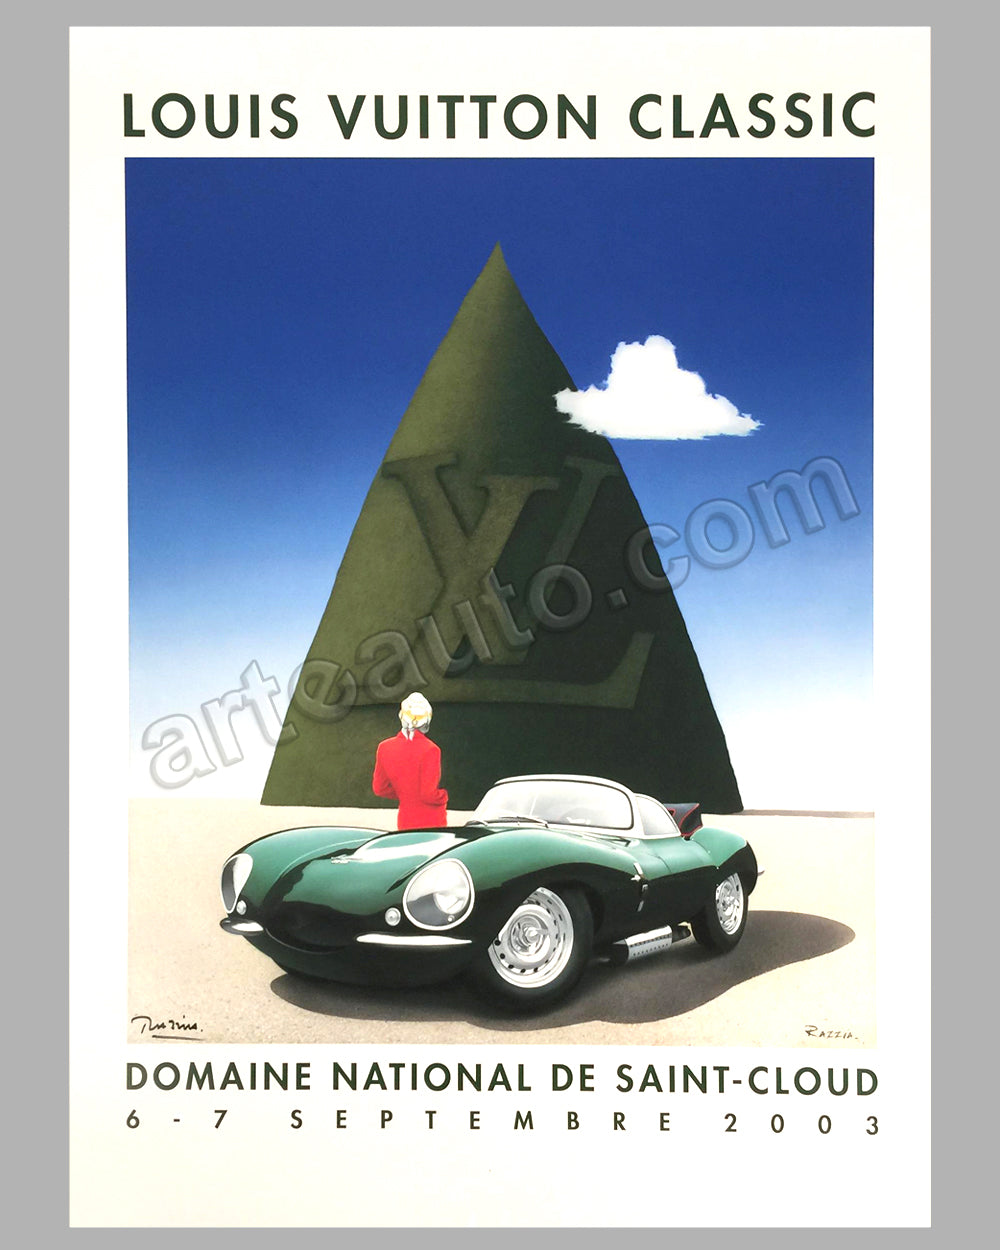 Louis Vuitton Concours d'Elegance St Cloud 2003 large poster by Razzia -  l'art et l'automobile